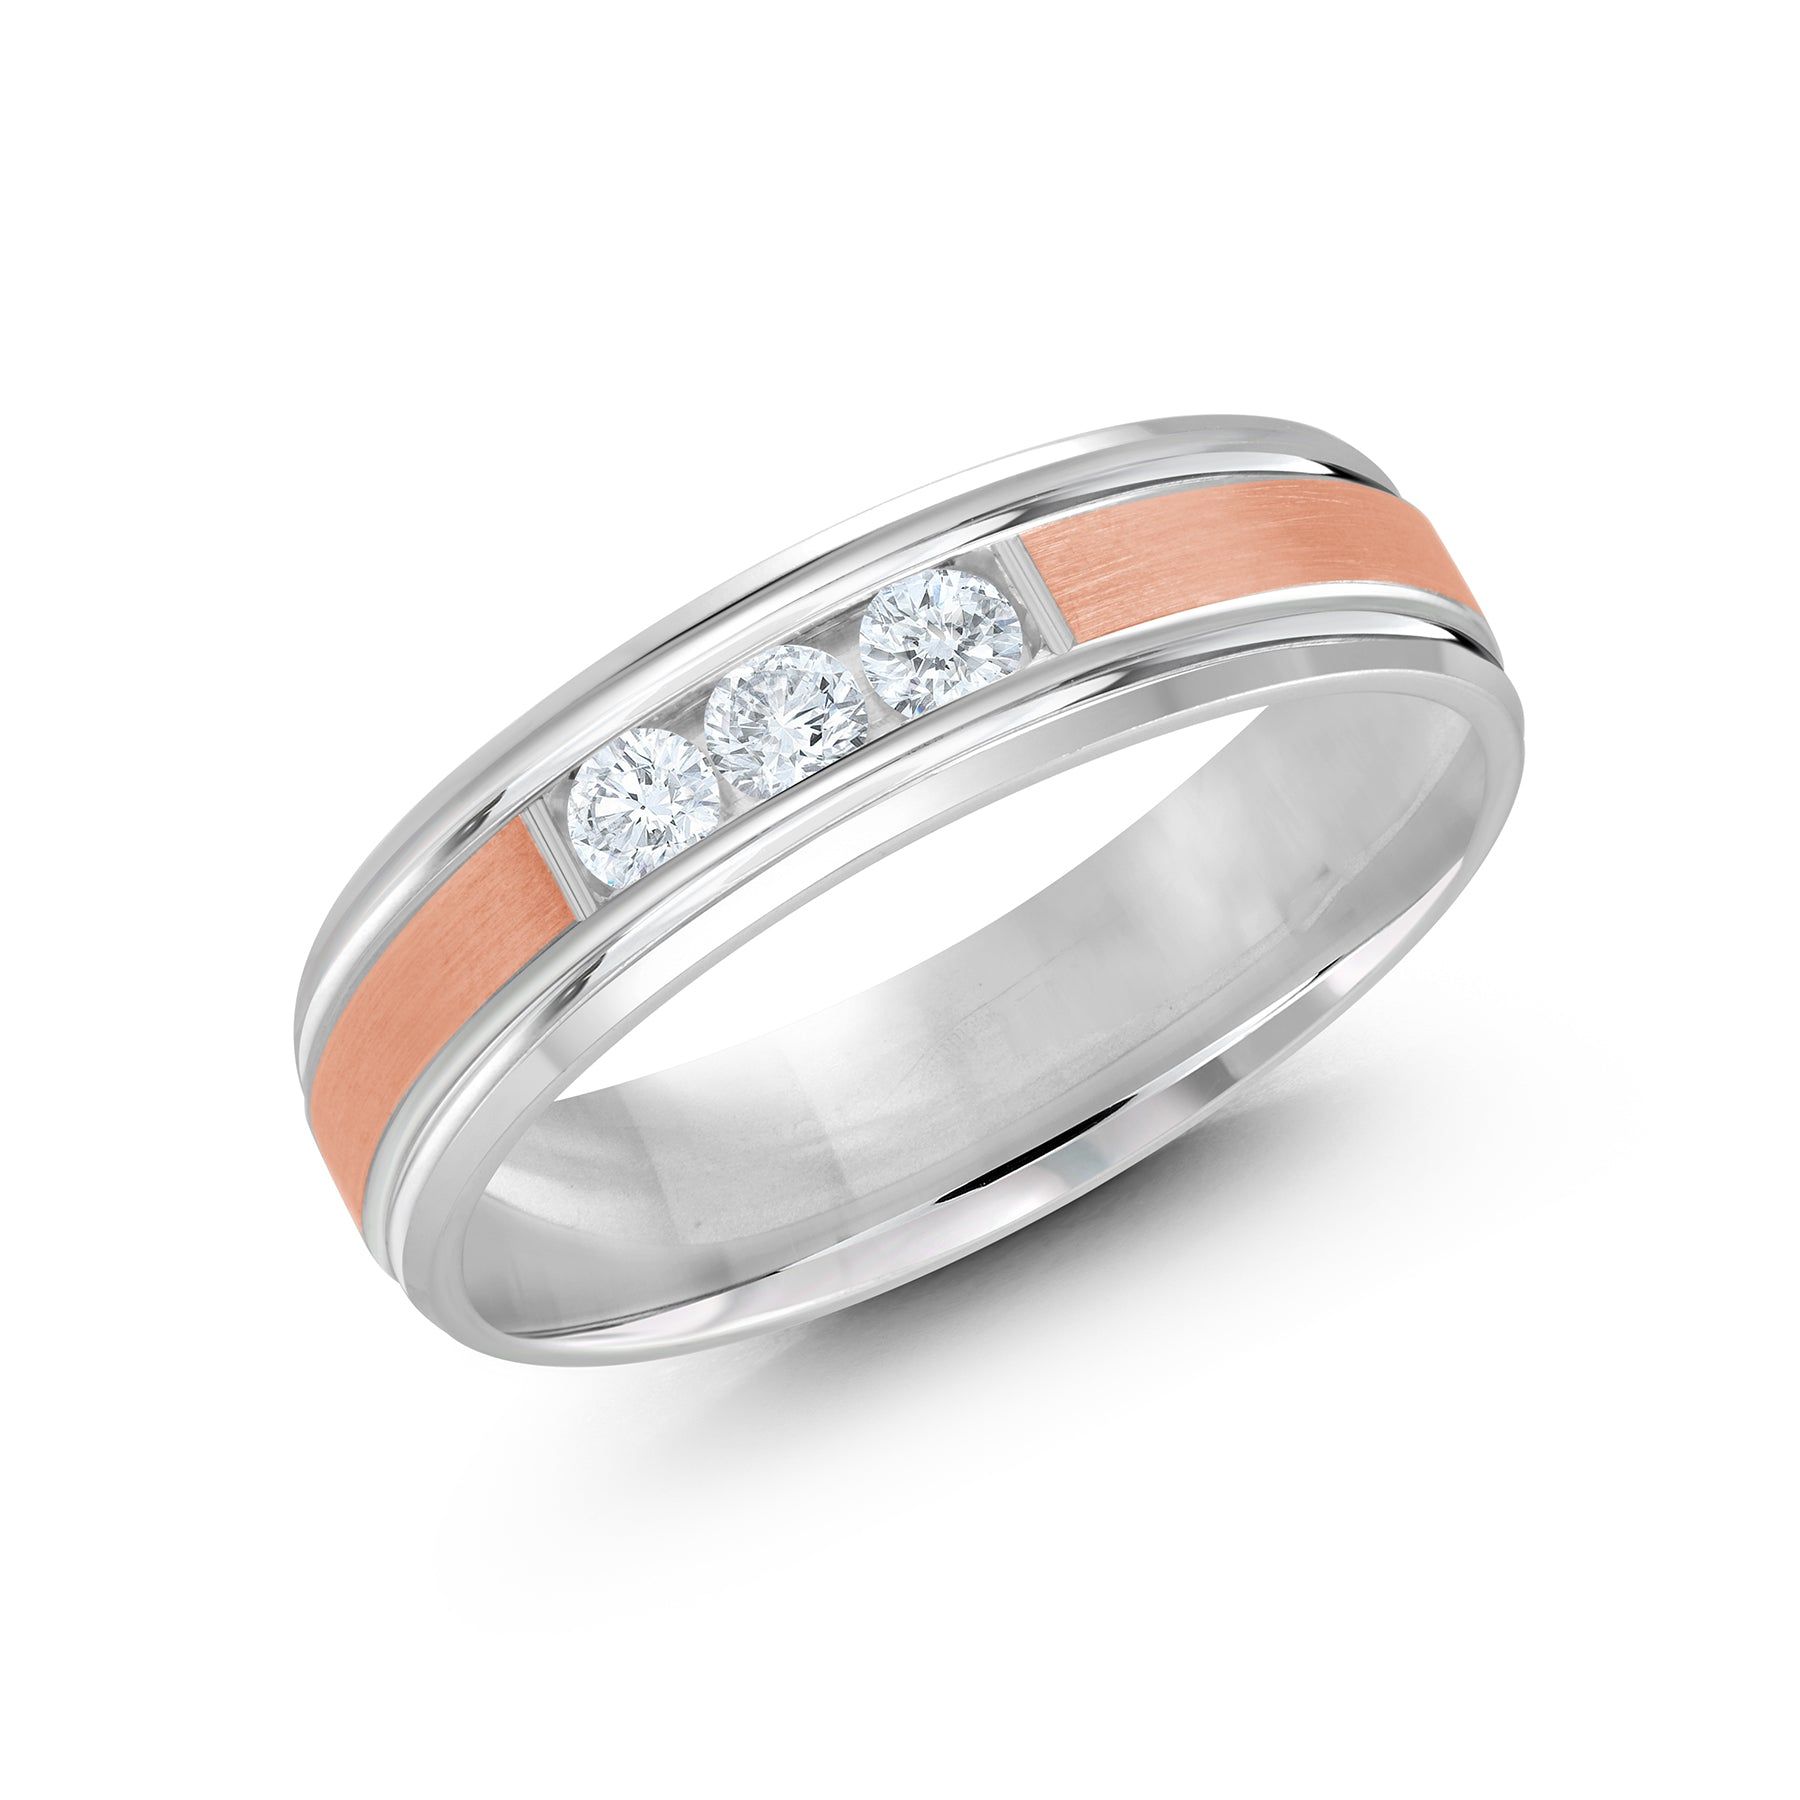 Men's 6mm 0.21 CTW Two-tone Satin-finish Diamond Wedding Ring